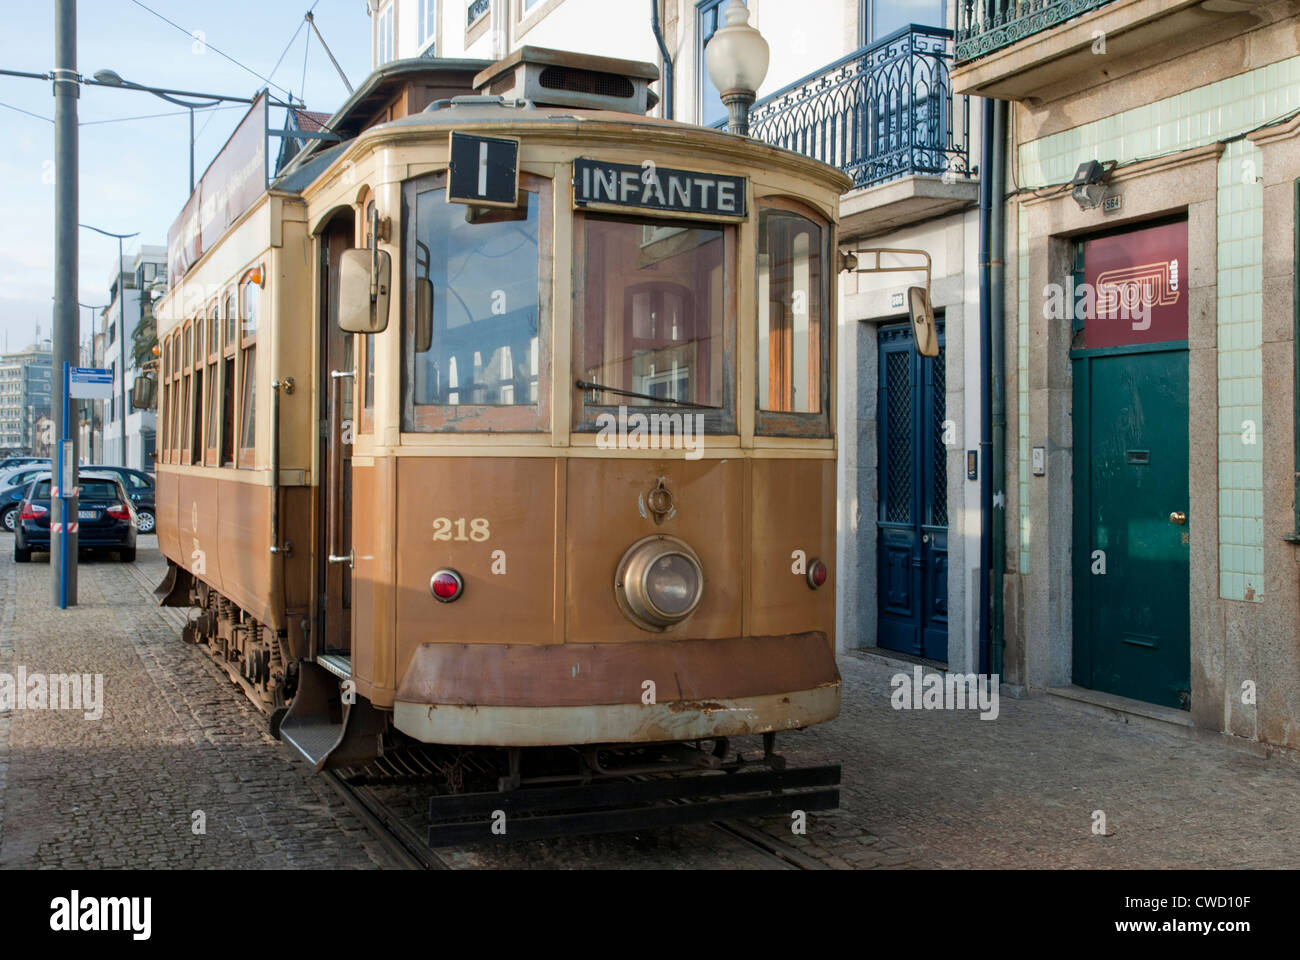 Tram in Oporto (Porto), Portugal Stock Photo